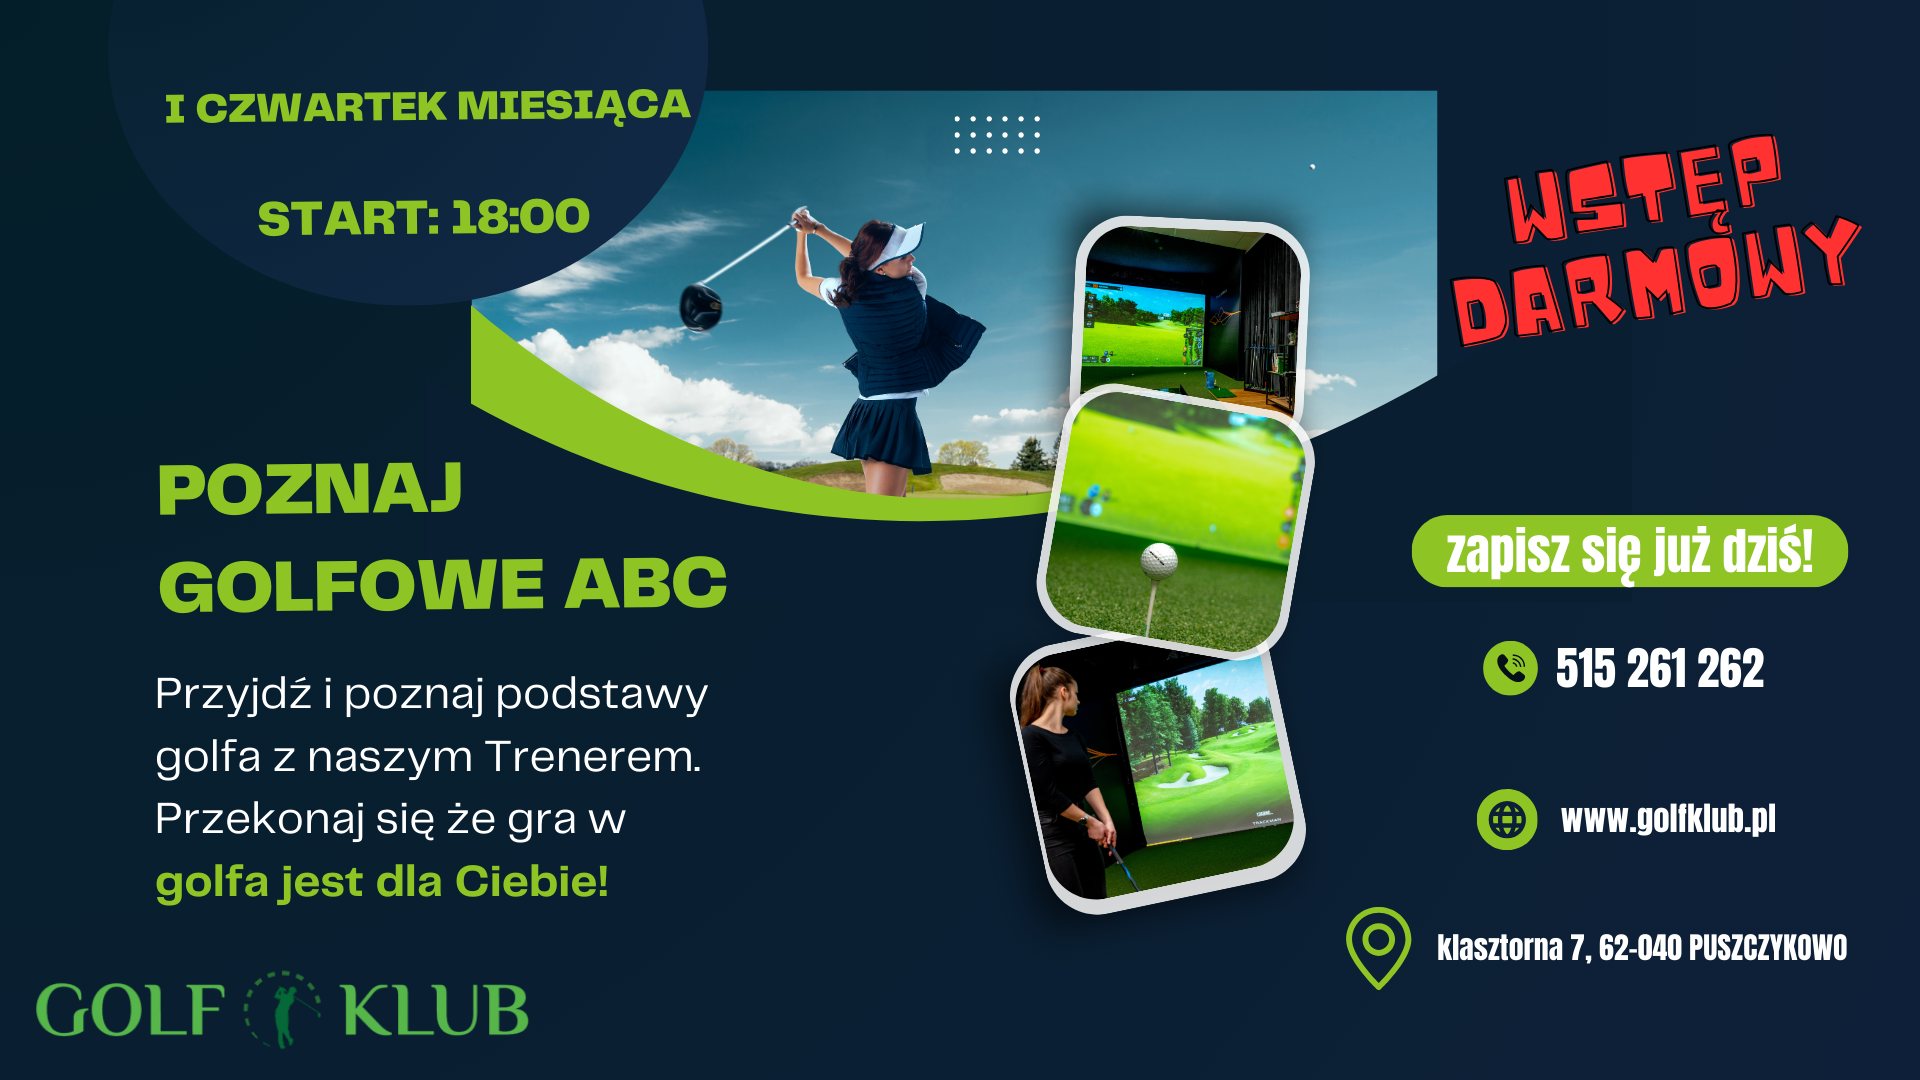 Puszczykowski Golf Klub zaprasza na spotkanie dla osób chcących spróbować gry w golfa! 